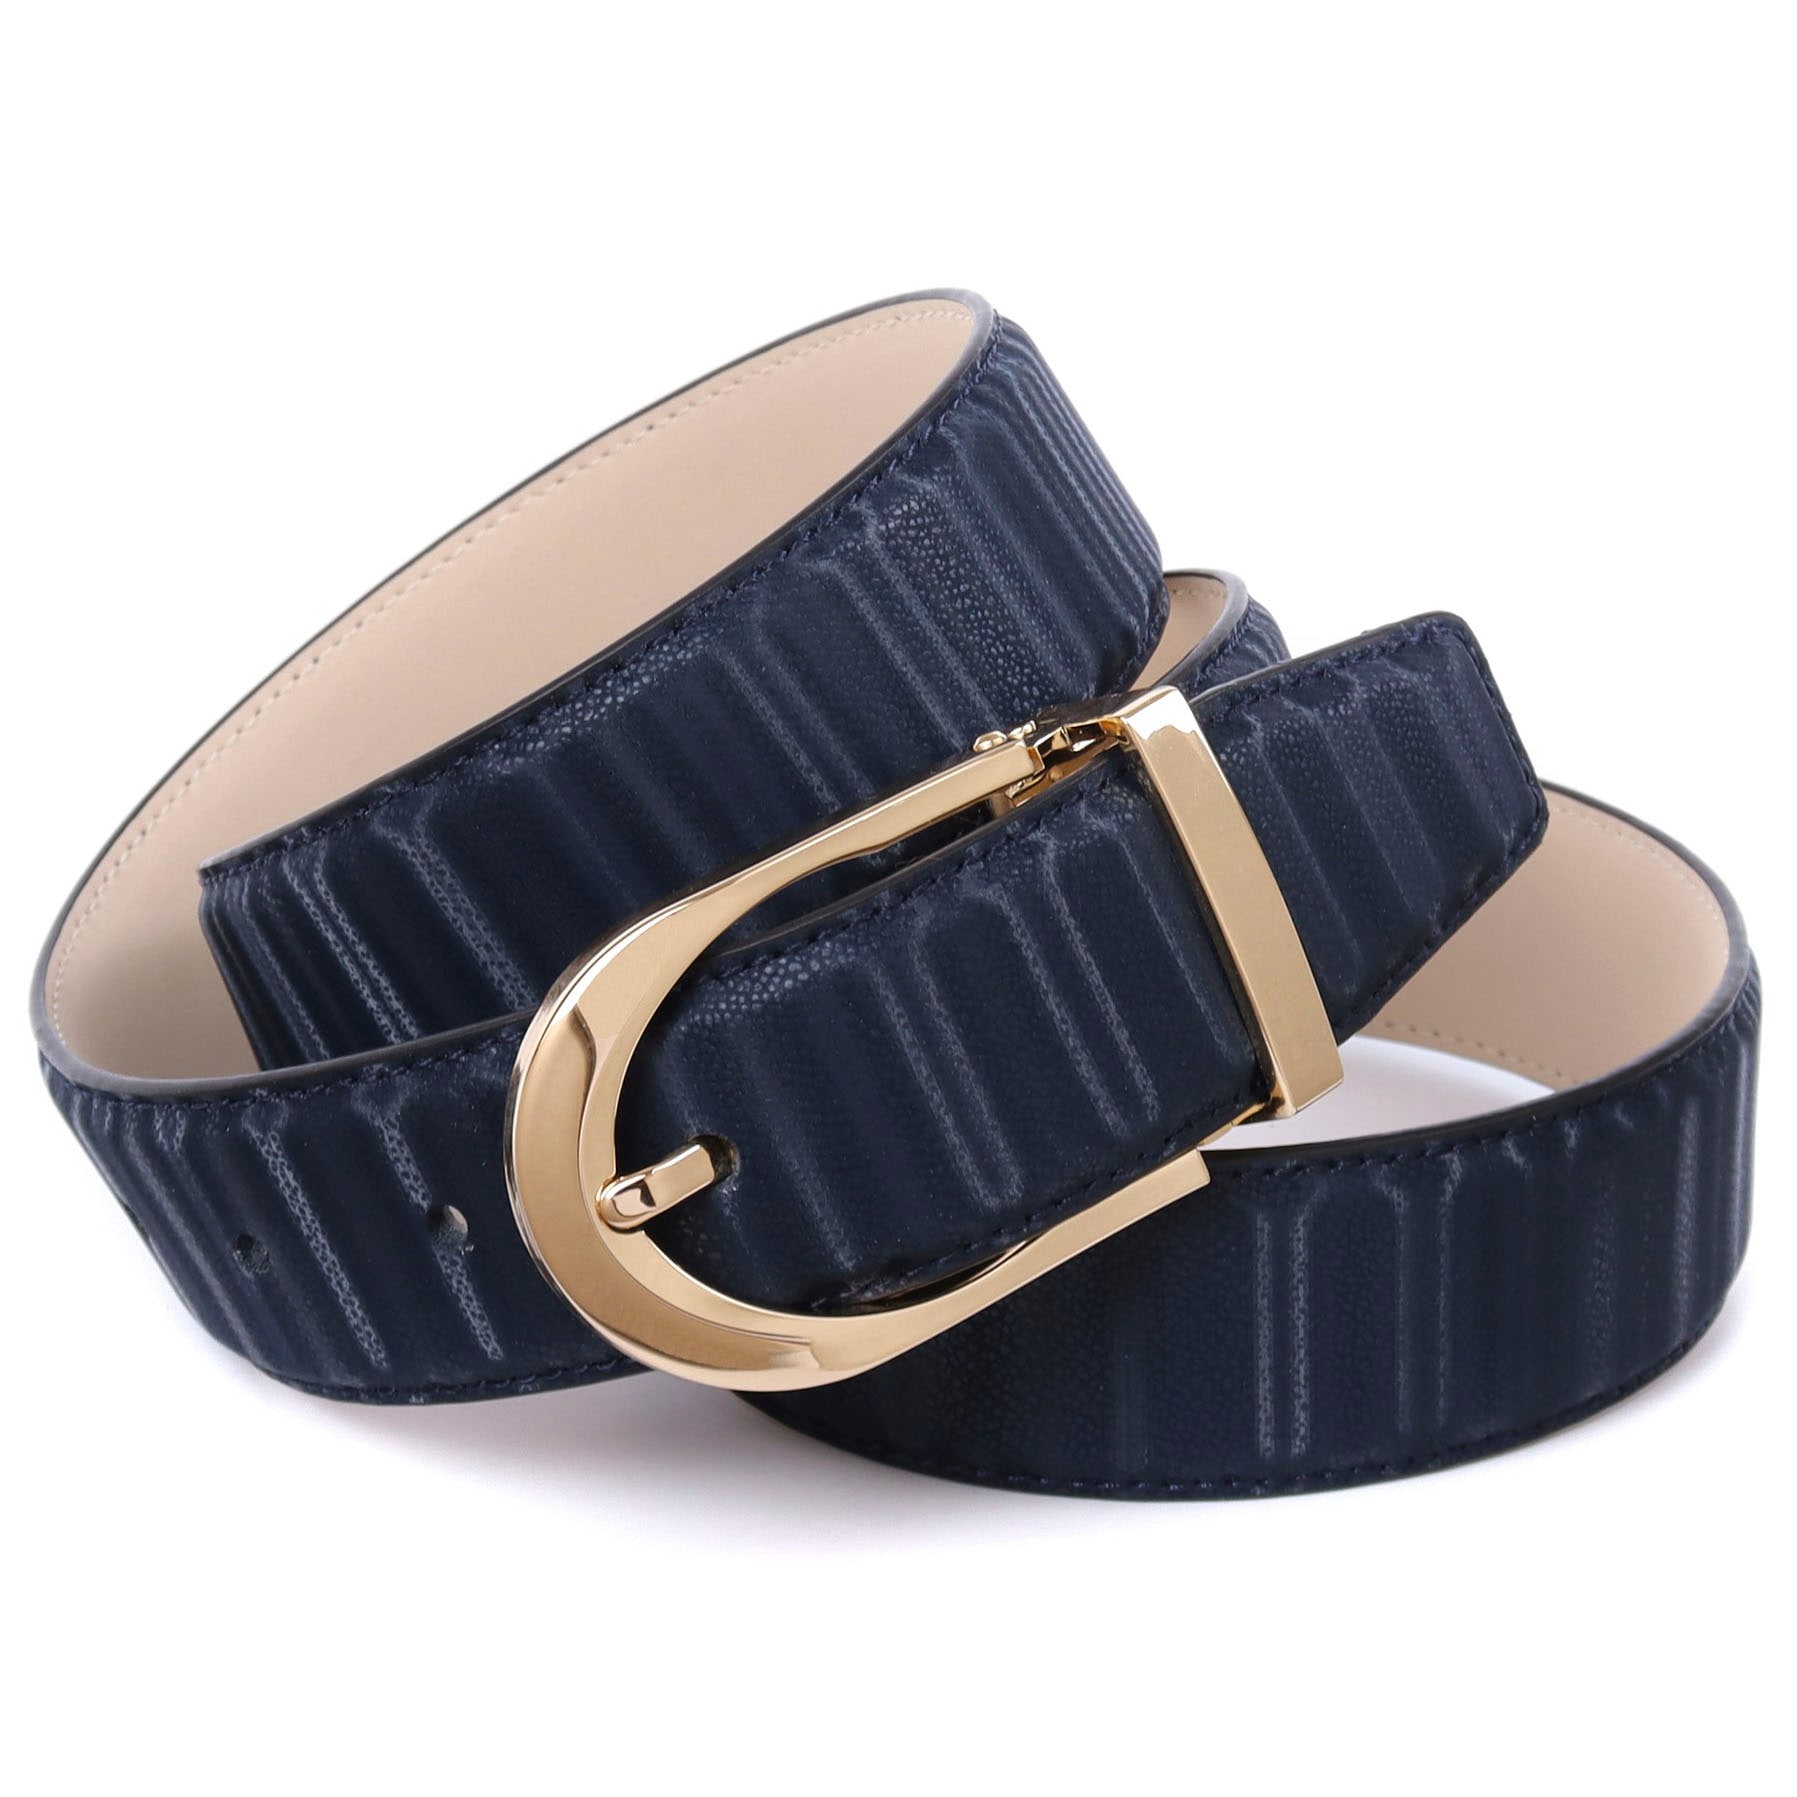 Anthoni Crown Ledergürtel, mit glänzender ovaler Schließe kaufen bei OTTO | Anzuggürtel